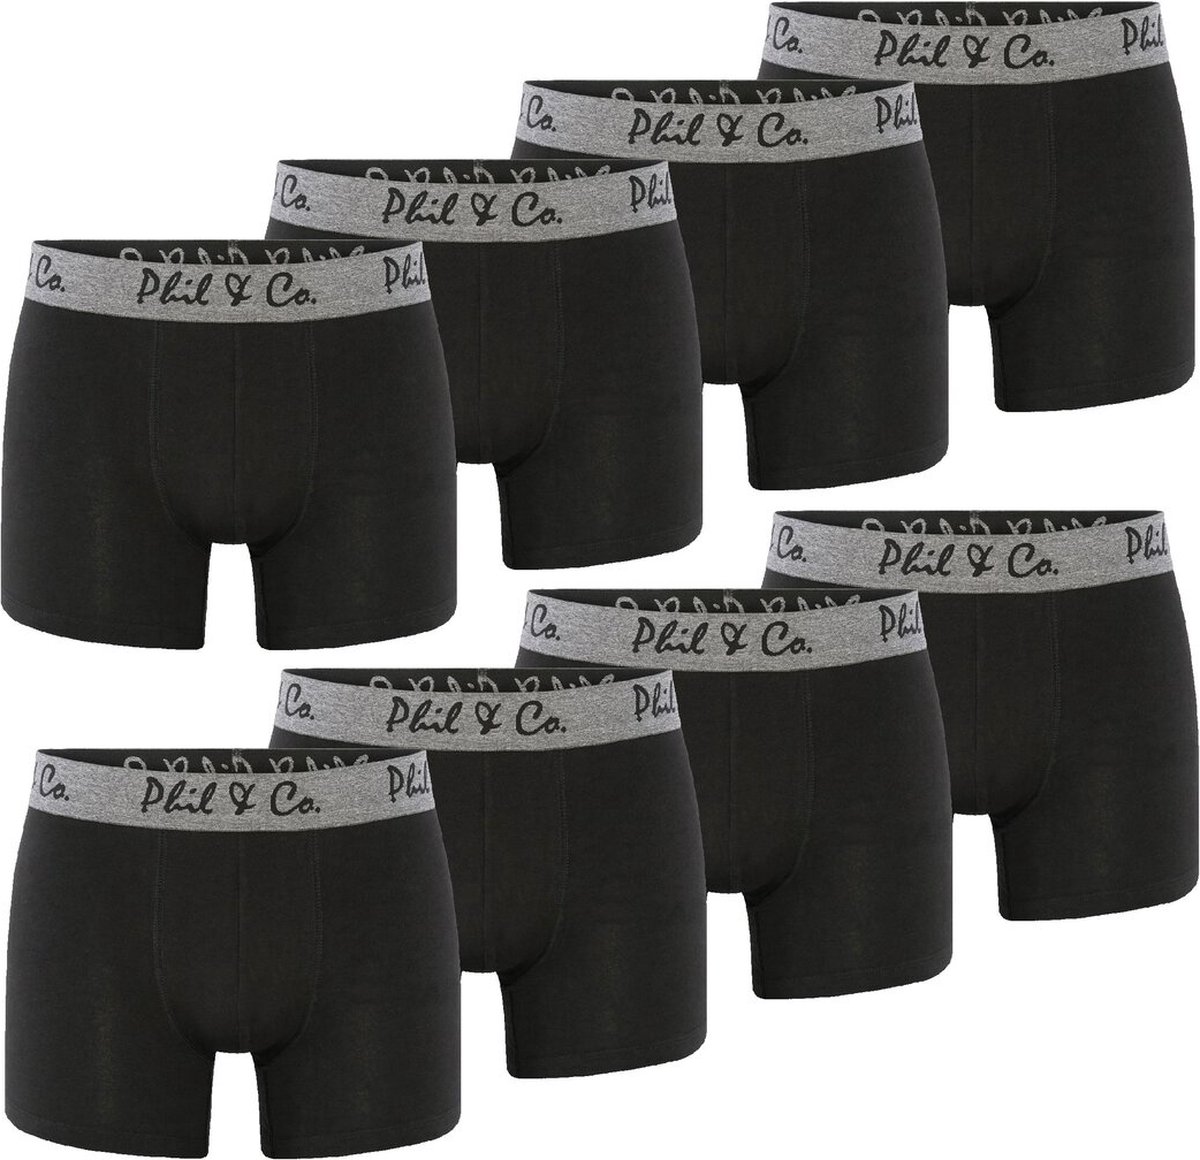 Phil & Co Zwarte Boxershorts Heren Multipack Zwart 8-Pack - Maat L | Onderbroek